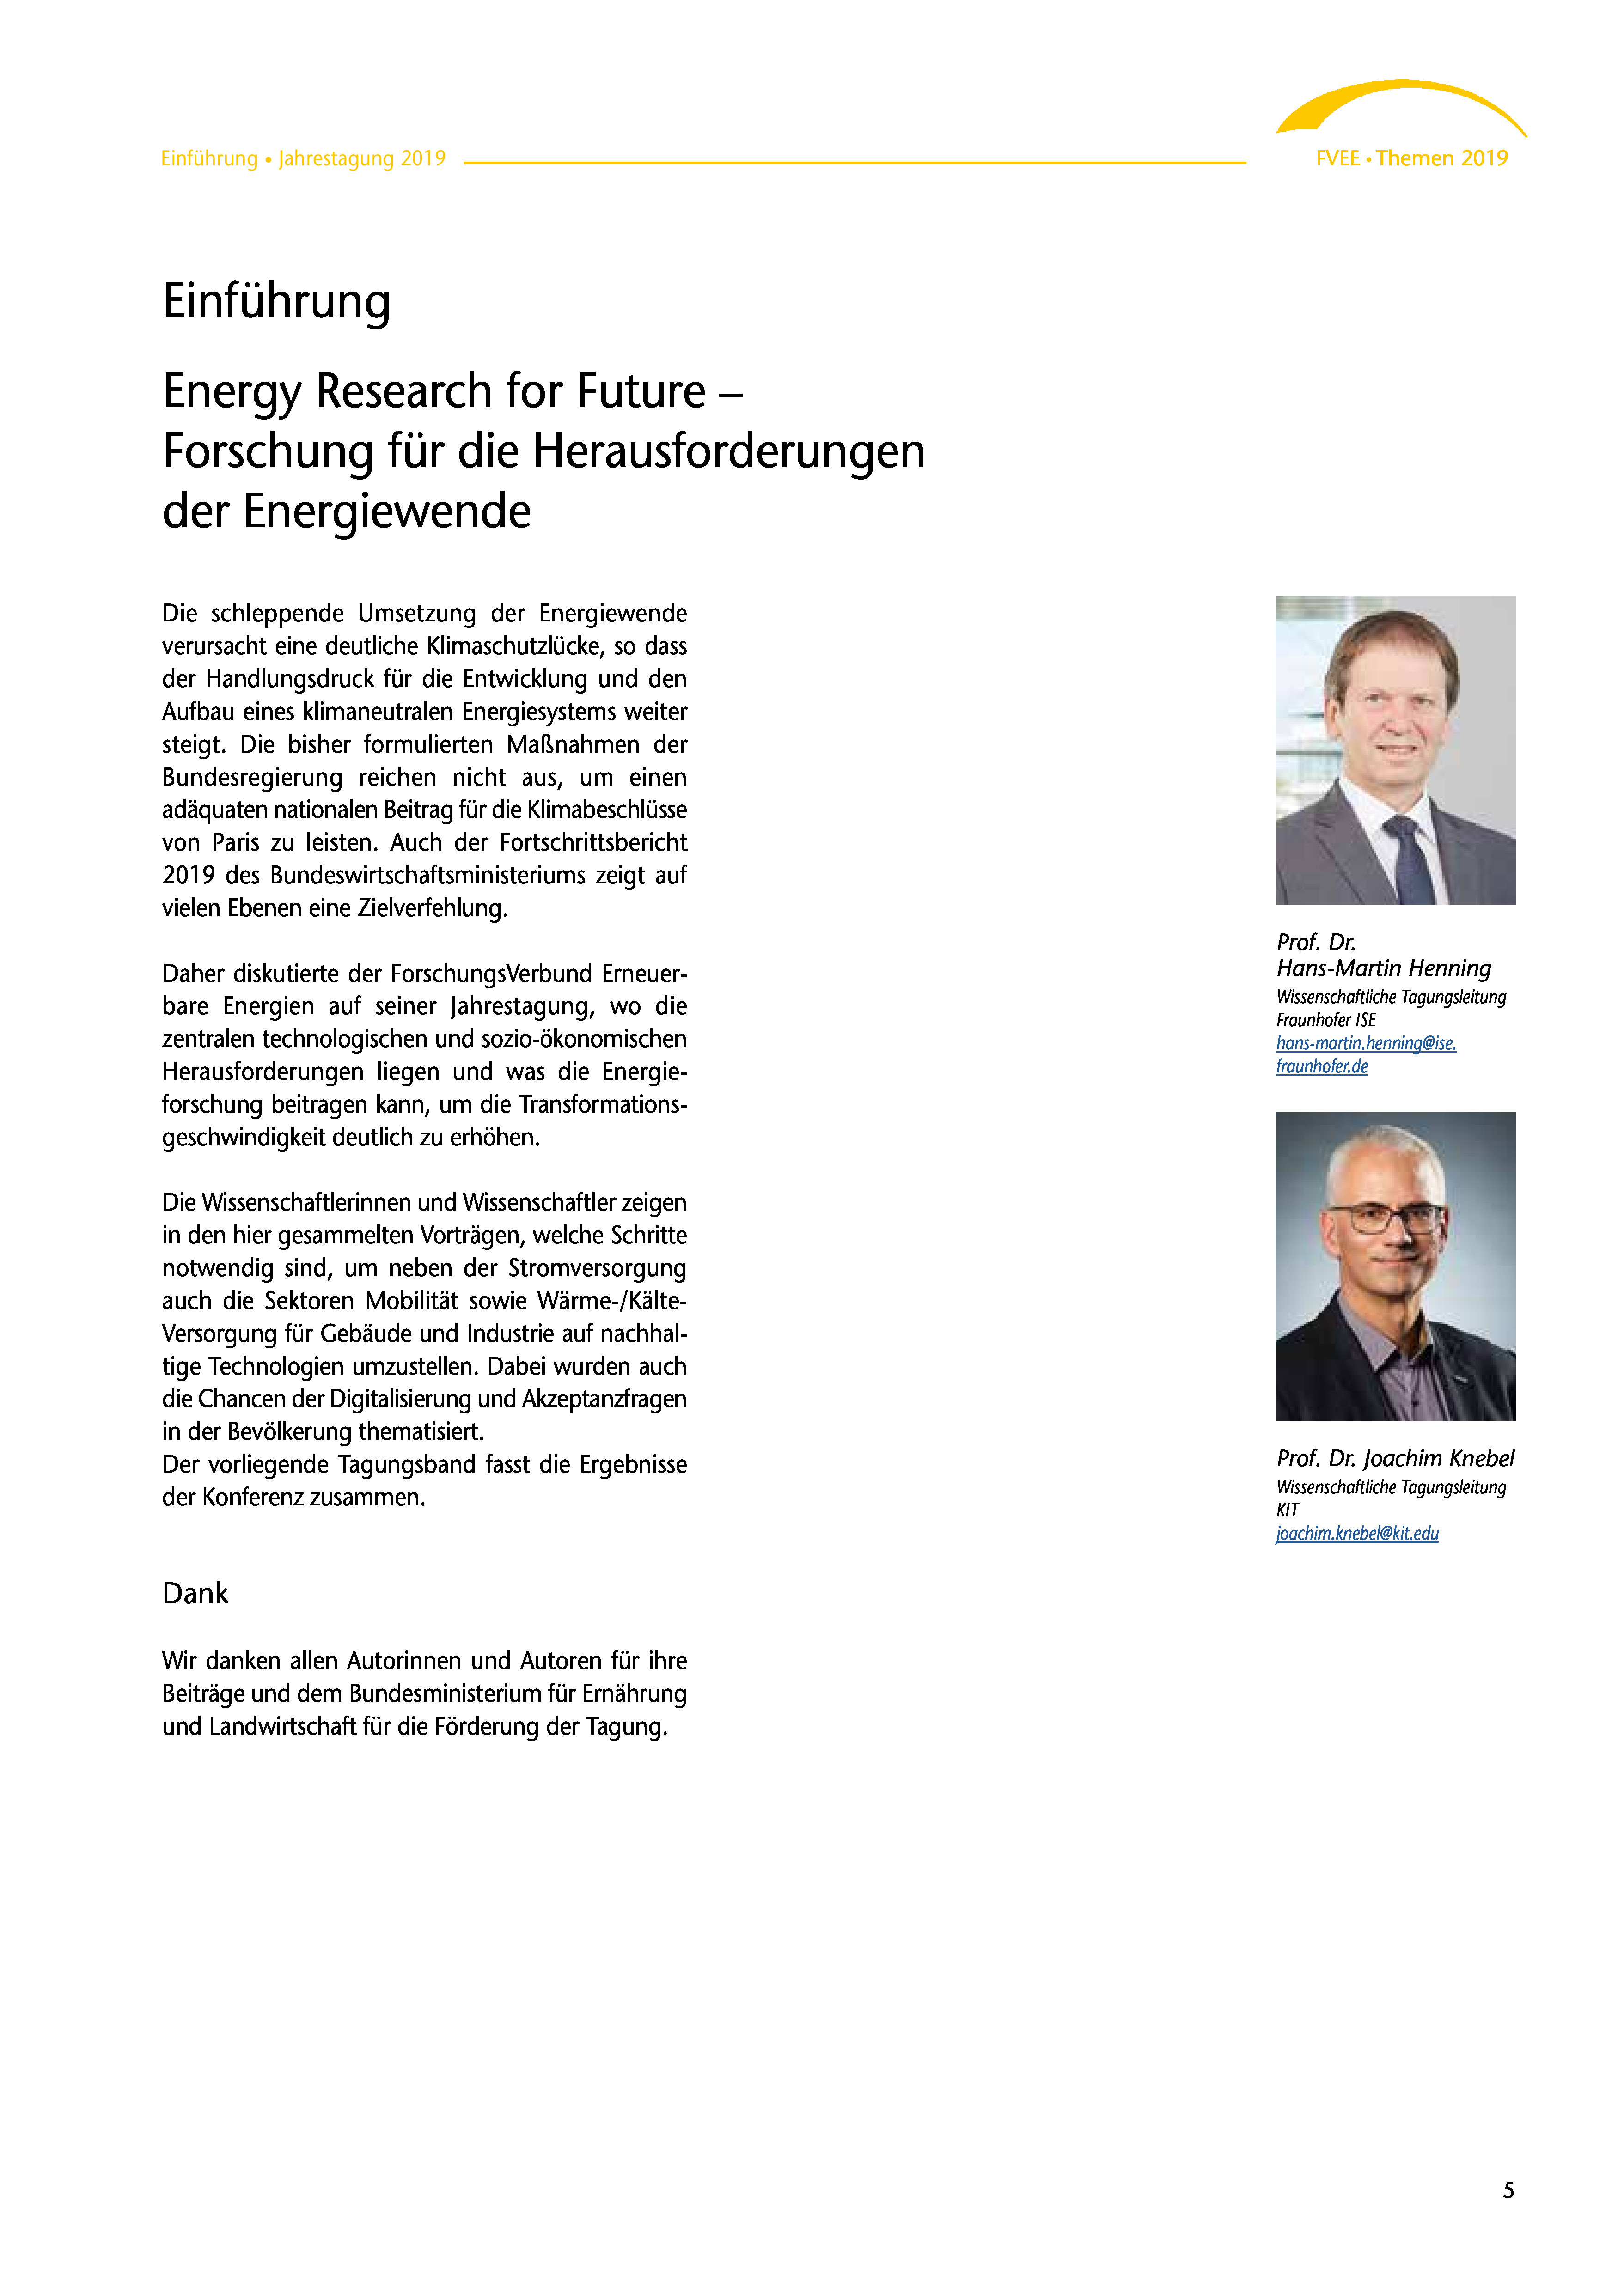 Themen 2019: Energy Research for Future – Forschung für die Herausforderungen der Energiewende